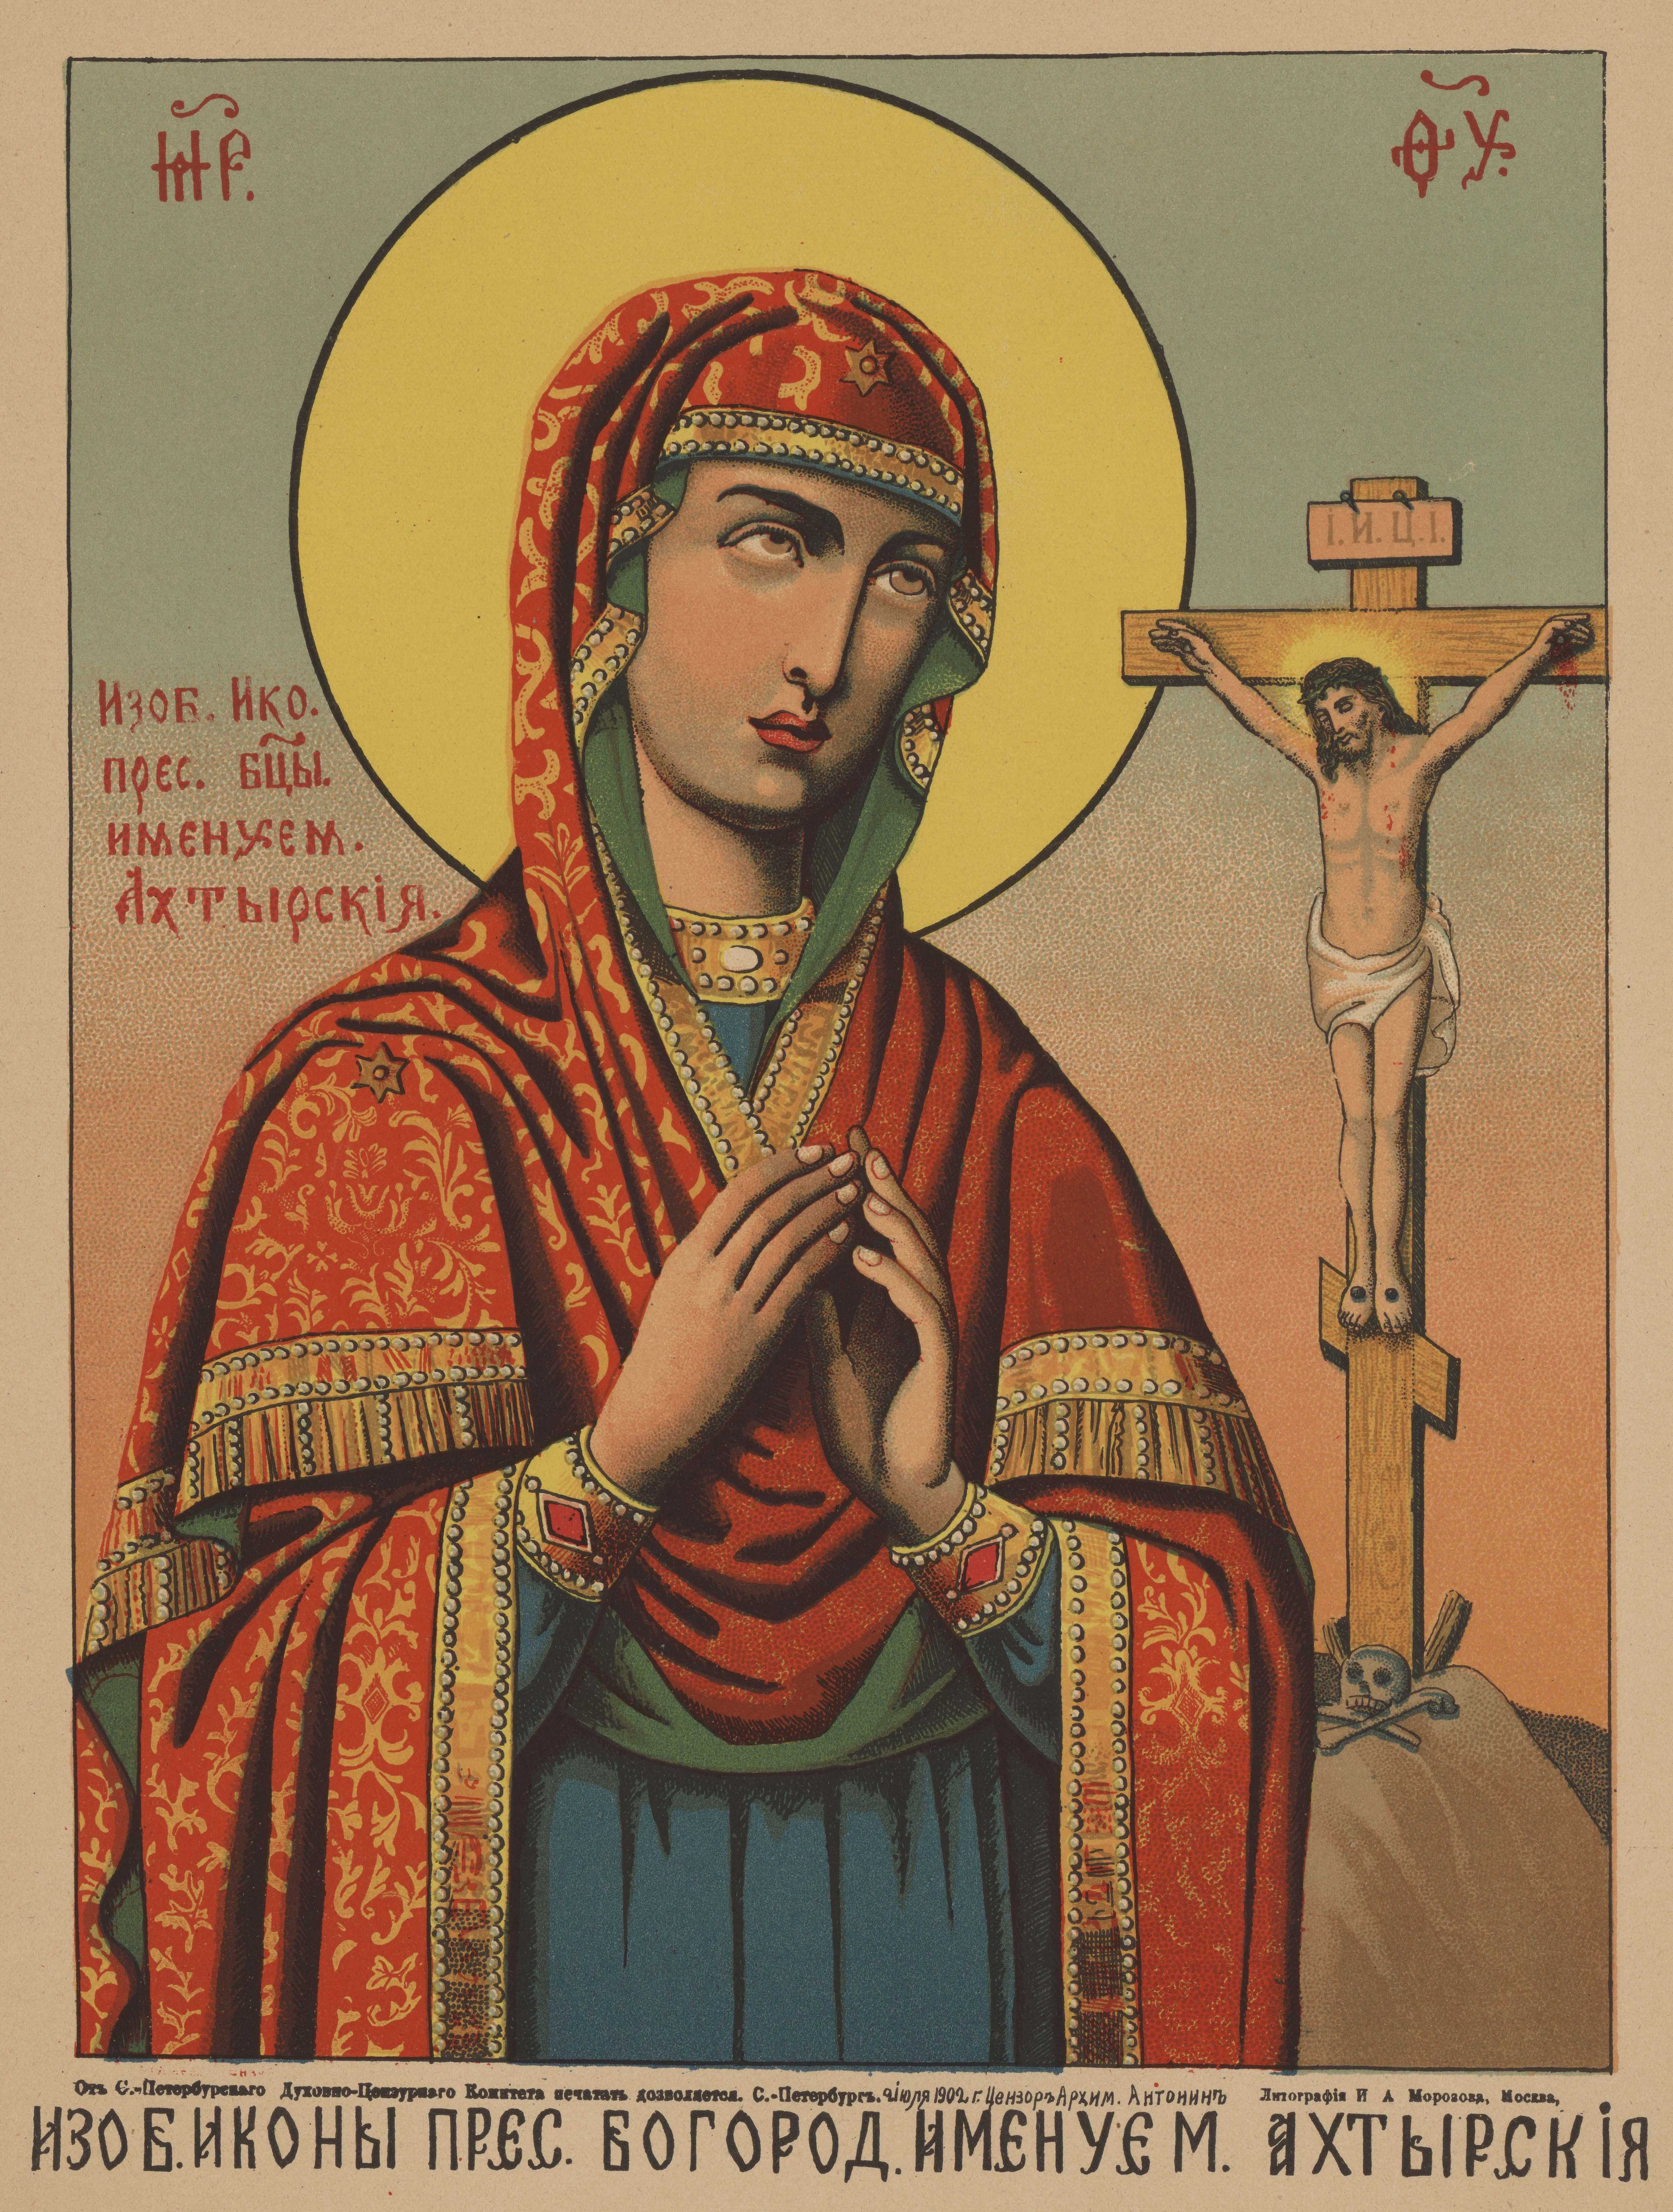 Изображение иконы Пресвятой Богородицы именуемой Ахтырская